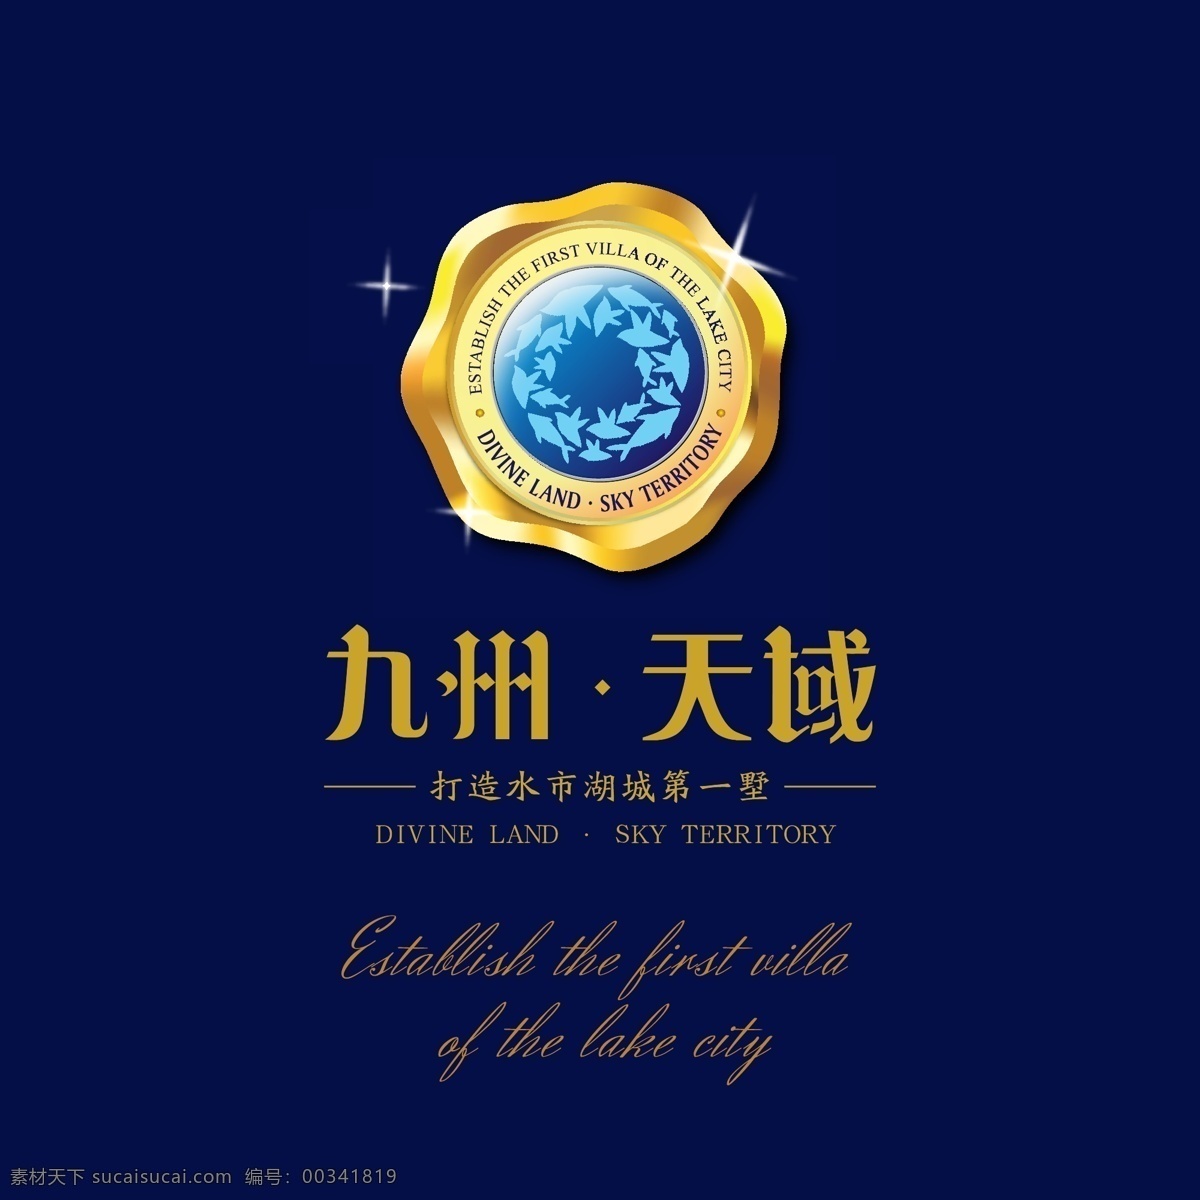 地产logo 九州 天域 打造 水域 湖城 第一墅 地产广告 logo设计